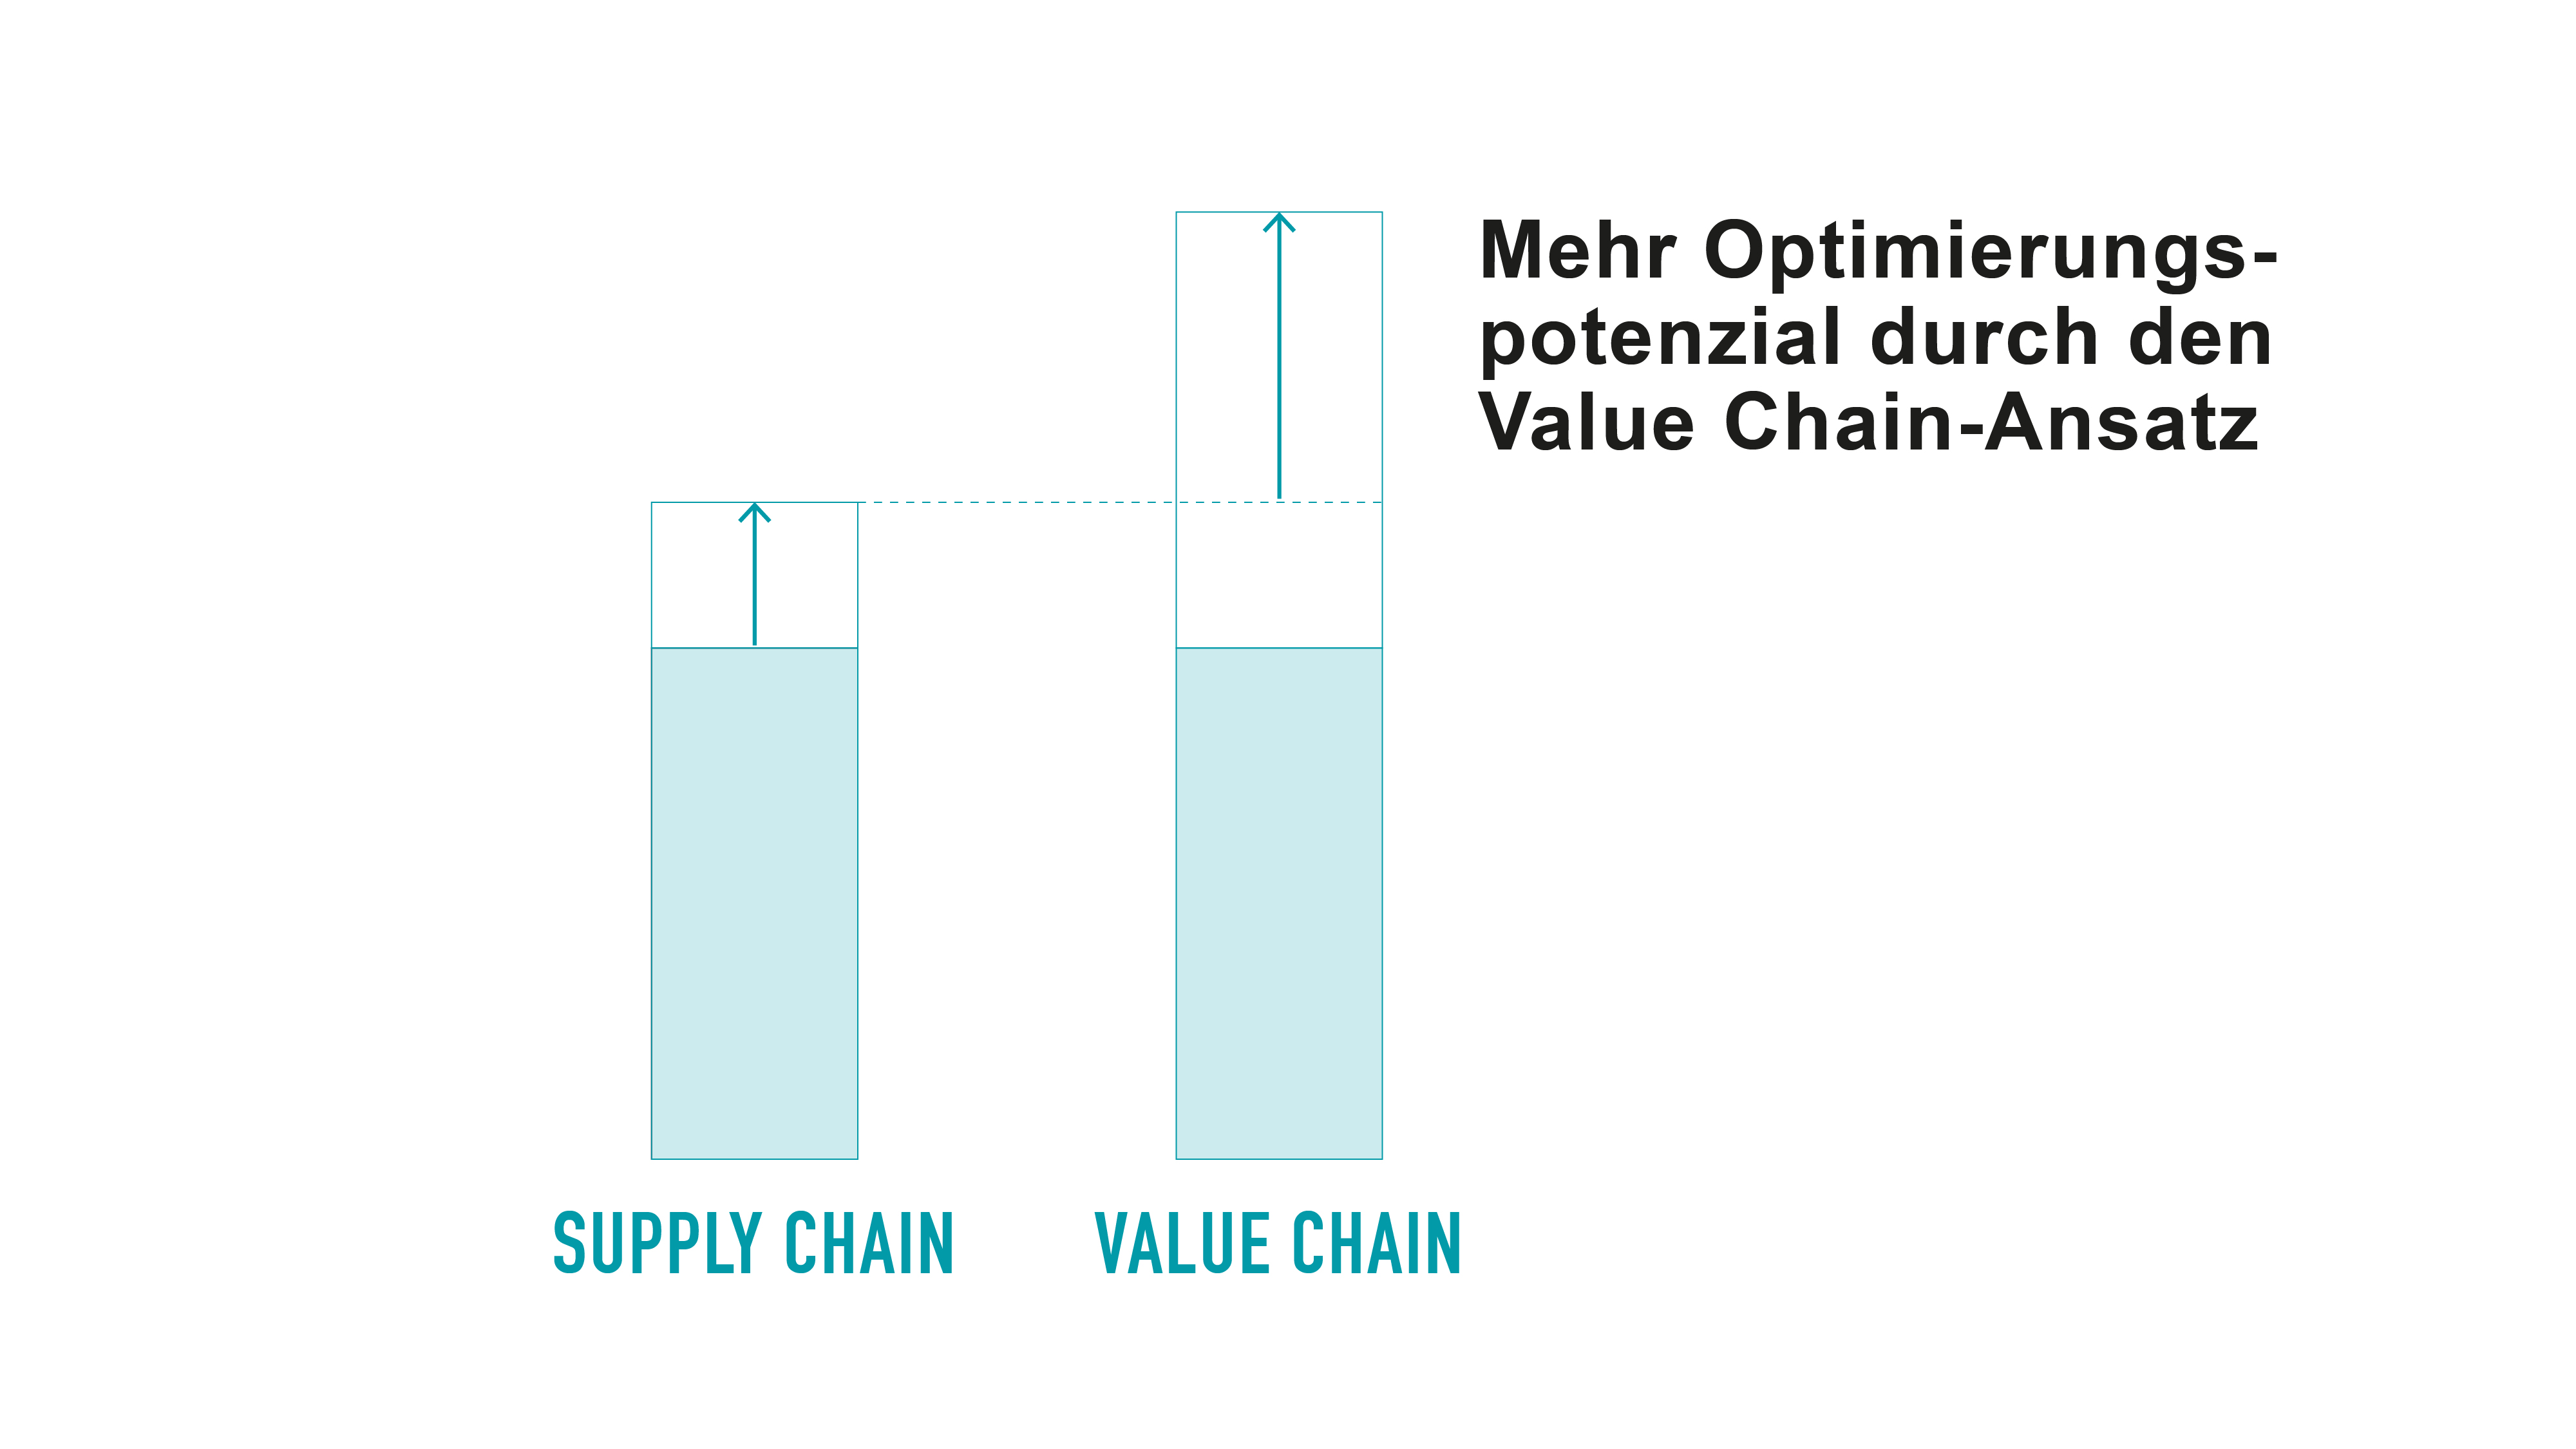 Im Vergleich zu Supply Chain birgt die Value Chain mehr Optimierungspotenzial